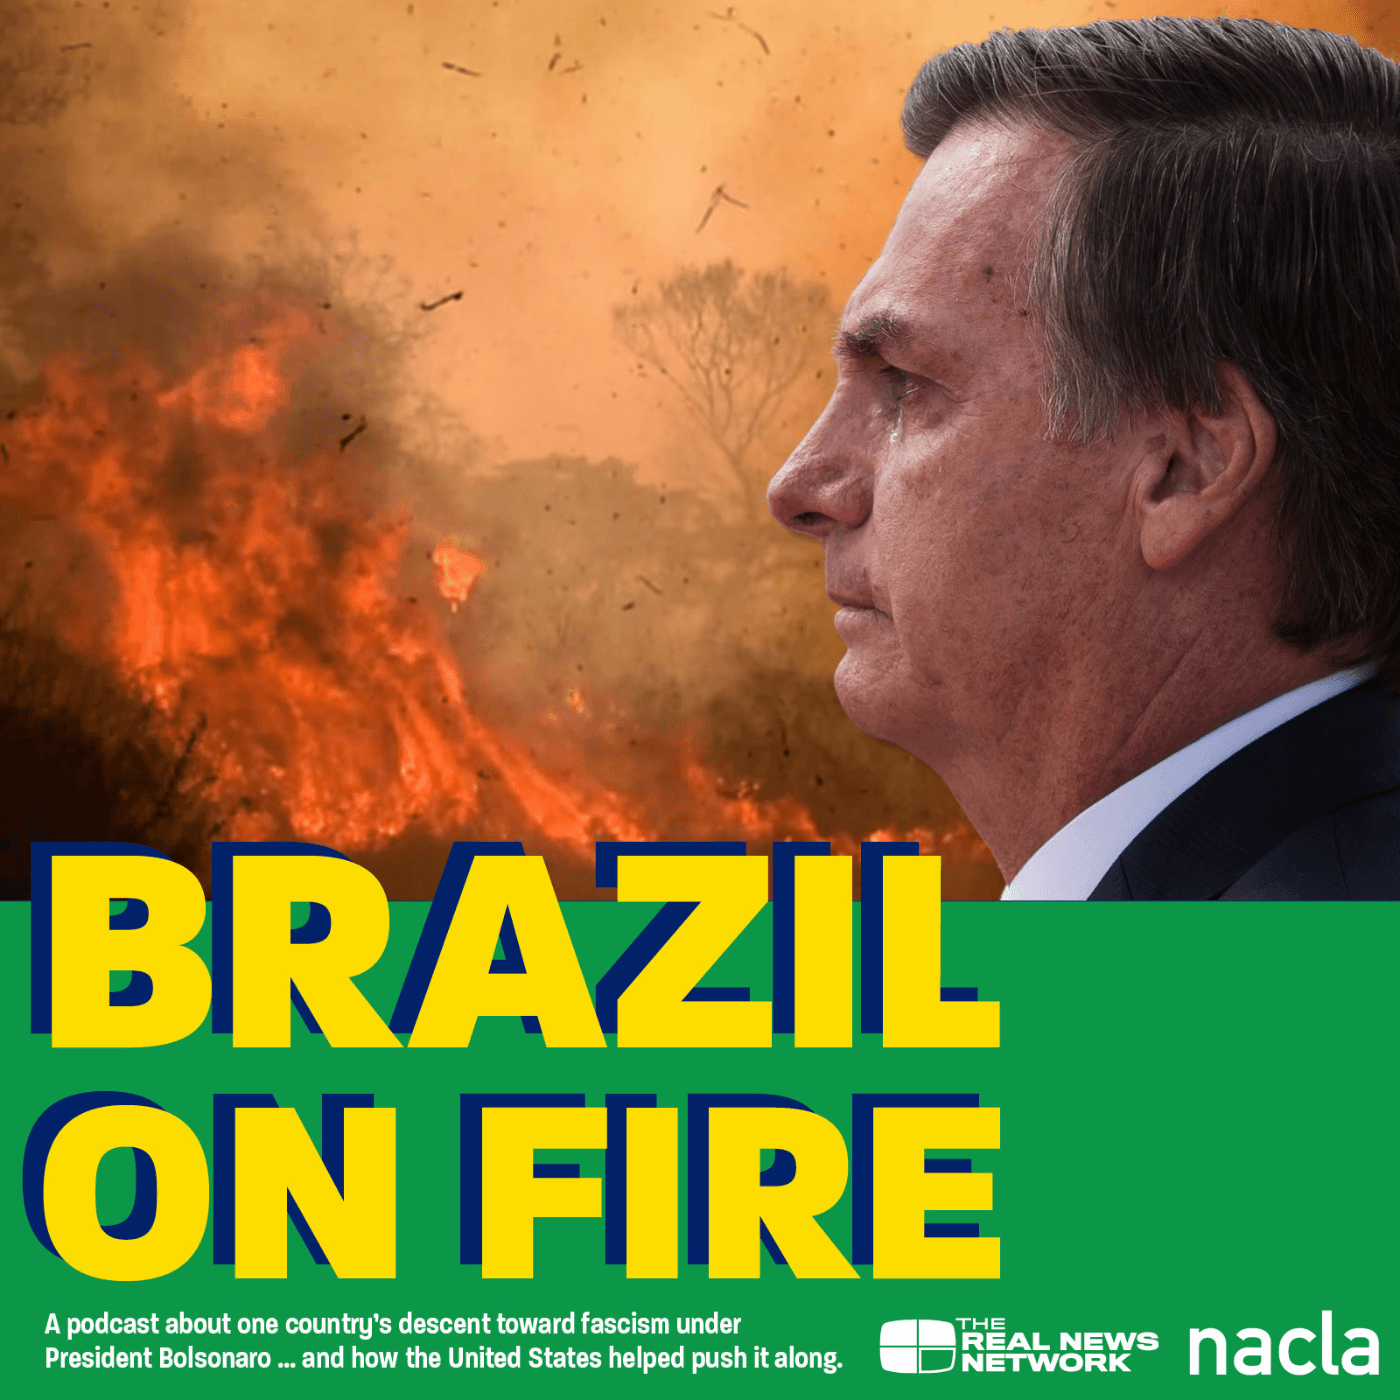 Thumbnail for "Brazil on Fire".